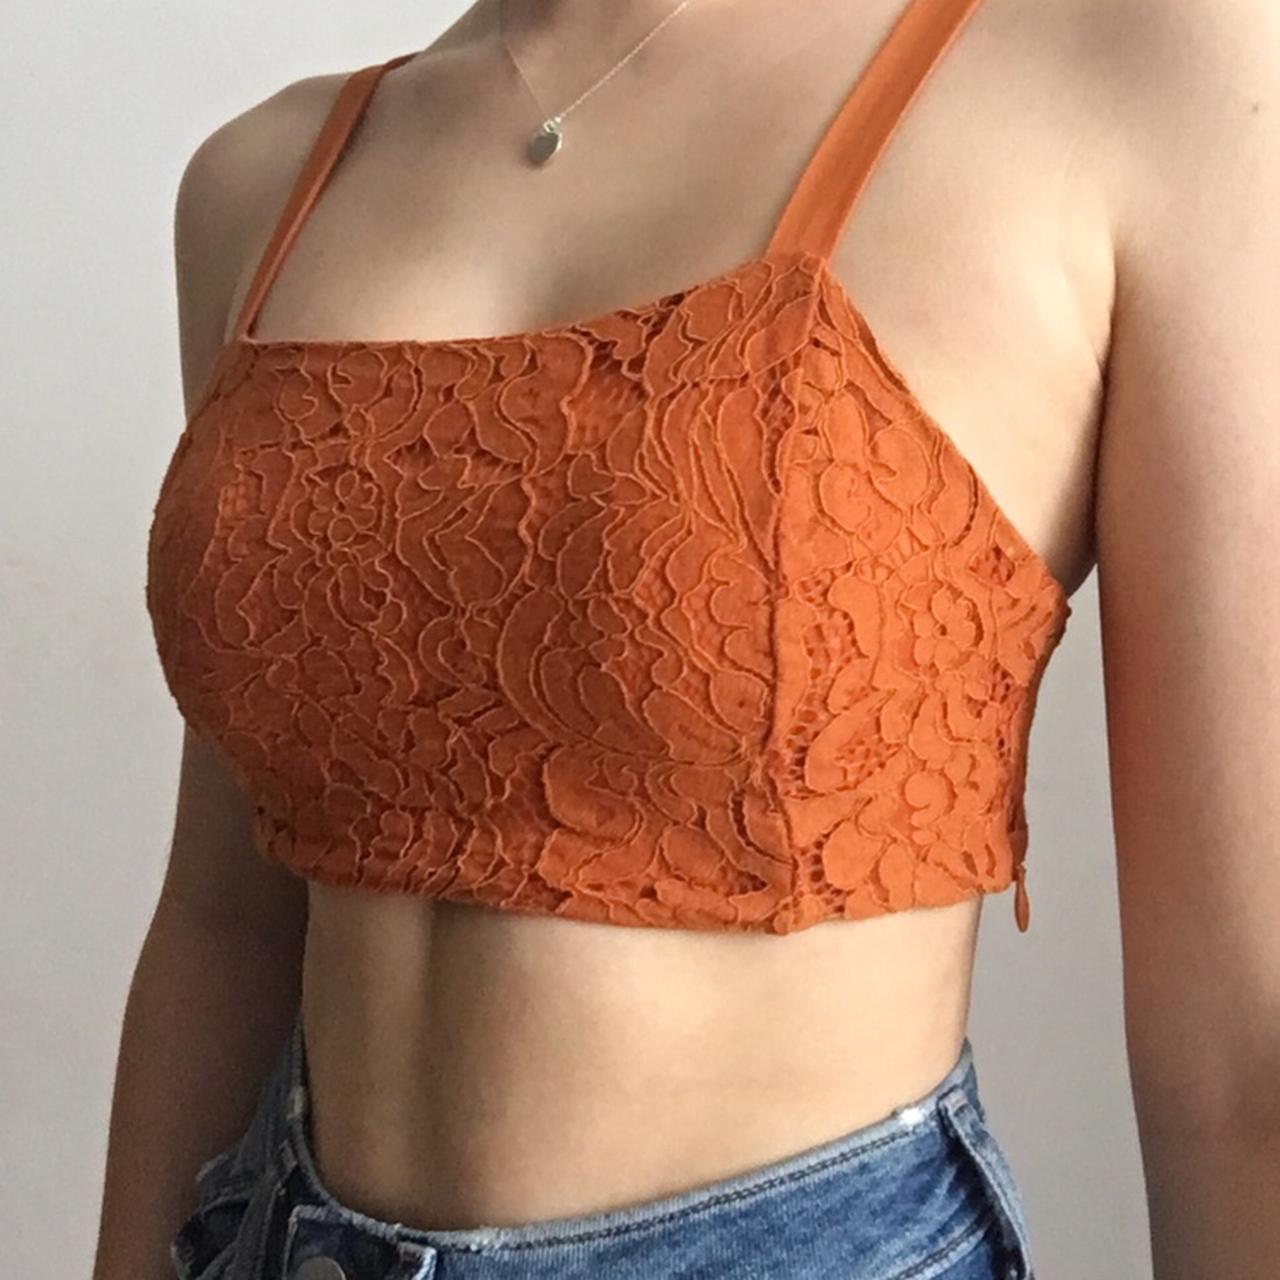 Zara Orange lace bralette top Size S so would fit - Depop